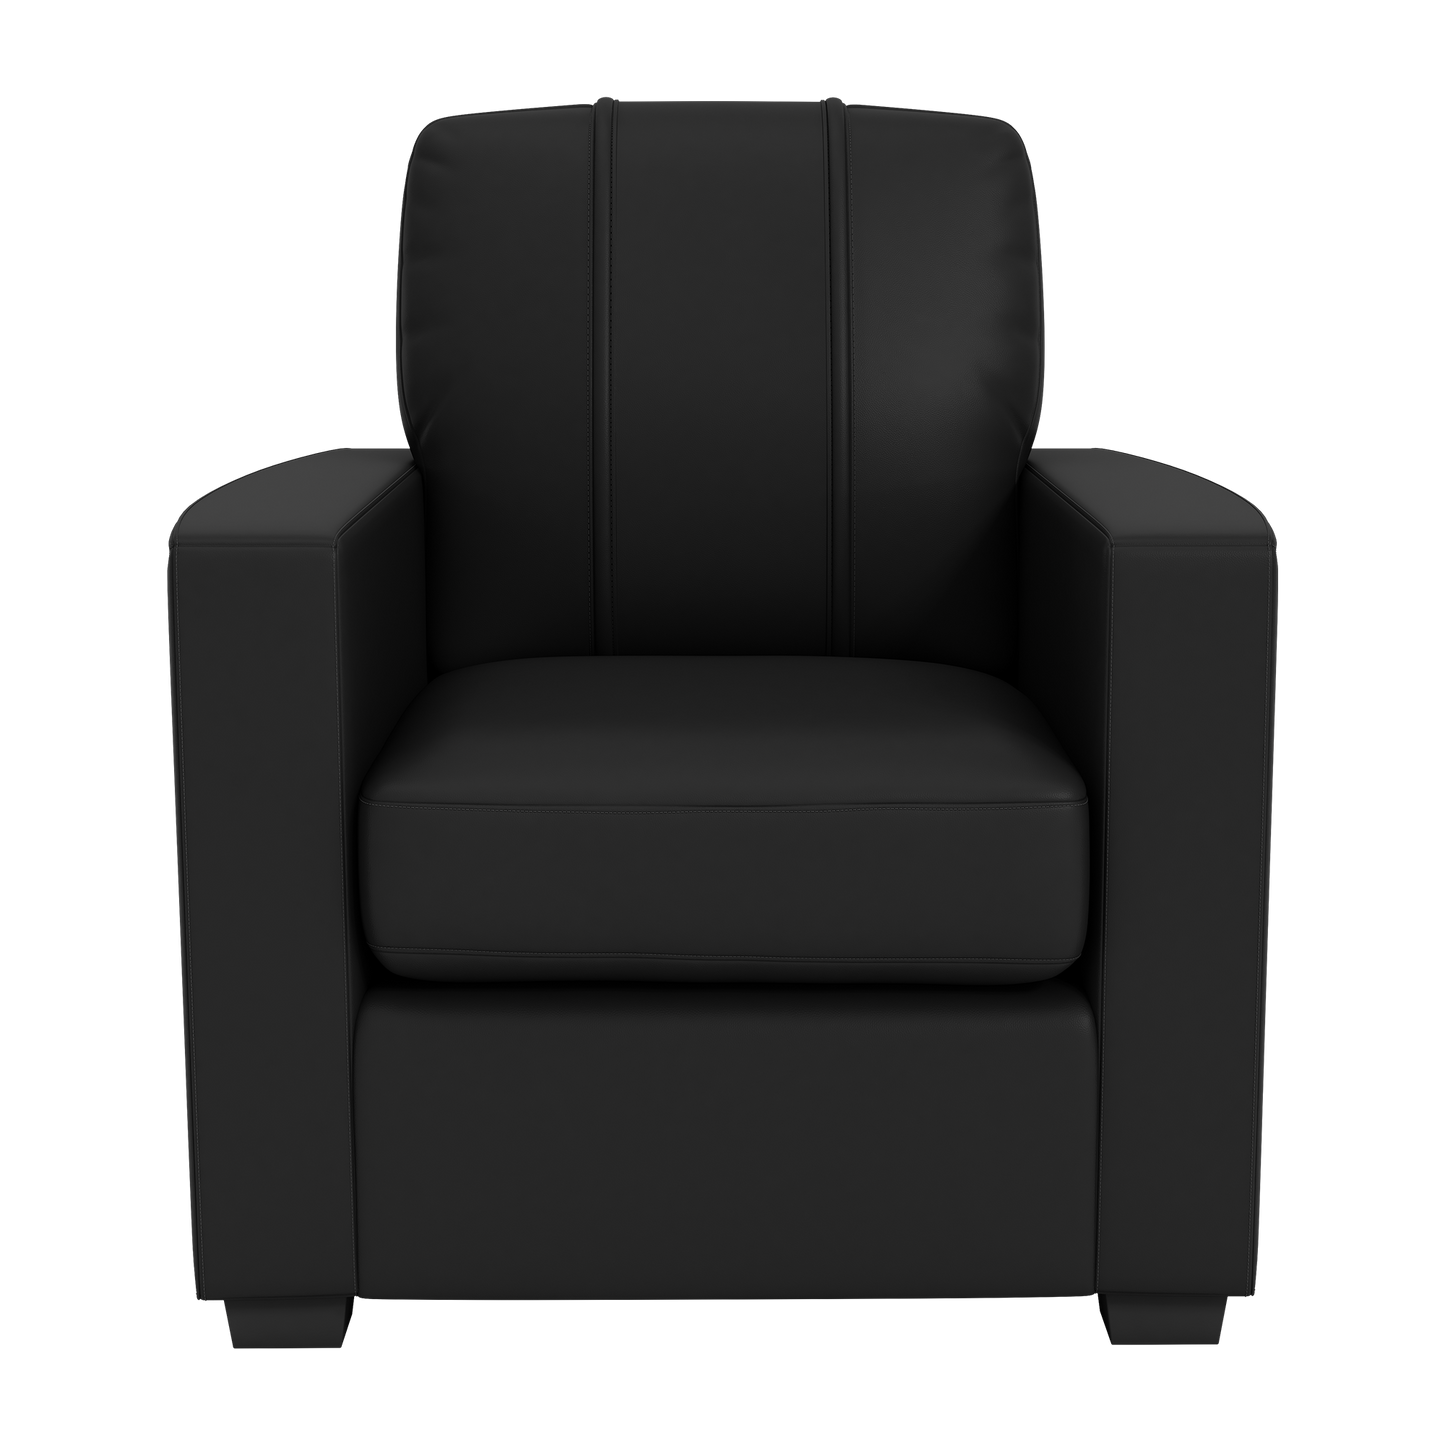 Silver Club Chair with Iowa Hawkeyes Block I Logo